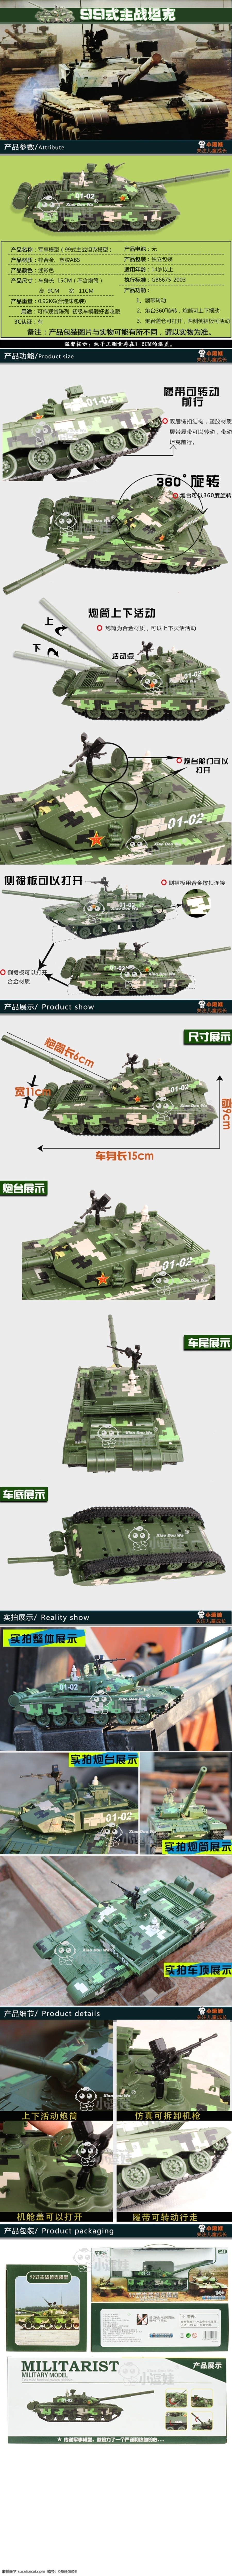 淘宝 玩具 模型 详情 页 详情页 坦克模型 99主战坦克 原创设计 原创淘宝设计